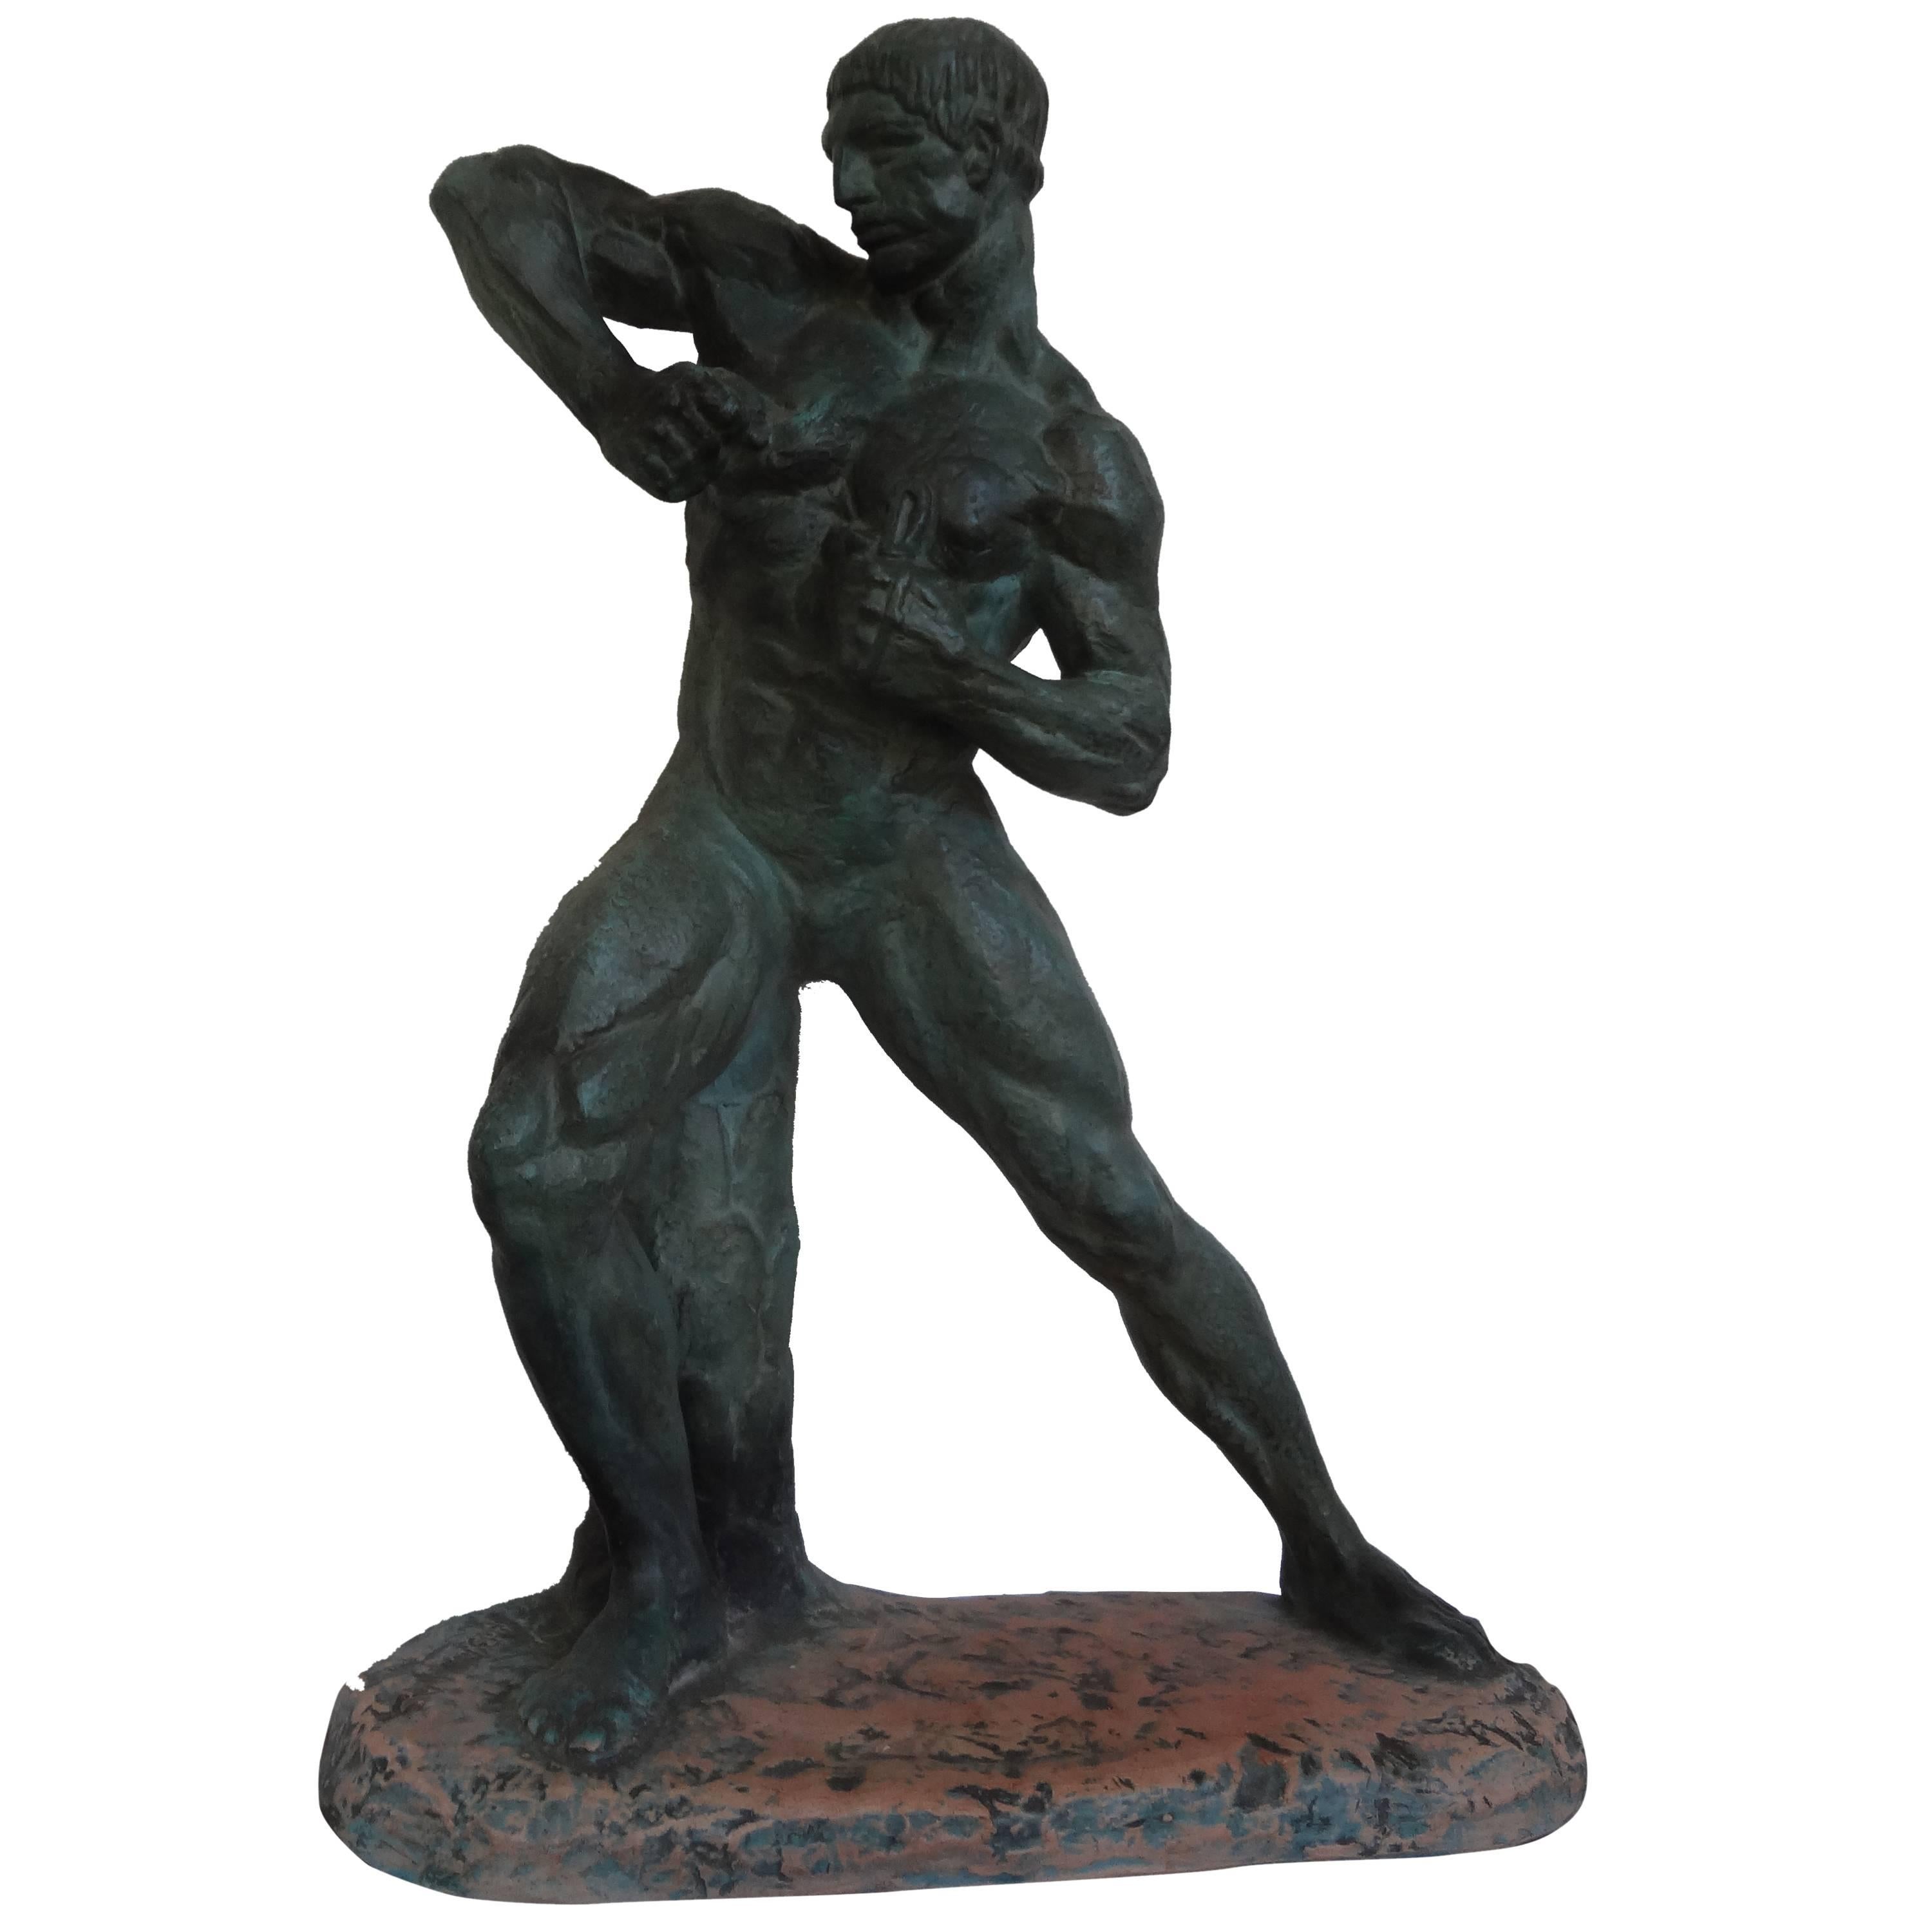 Diese fabelhafte französische Art Deco patinierte Terrakotta-Skulptur eines nackten männlichen Athleten ist signiert Henri Bargas. Diese gut ausgeführte Skulptur hat eine patinierte Oberfläche, die an Bronze erinnert, und stammt aus den 1930er